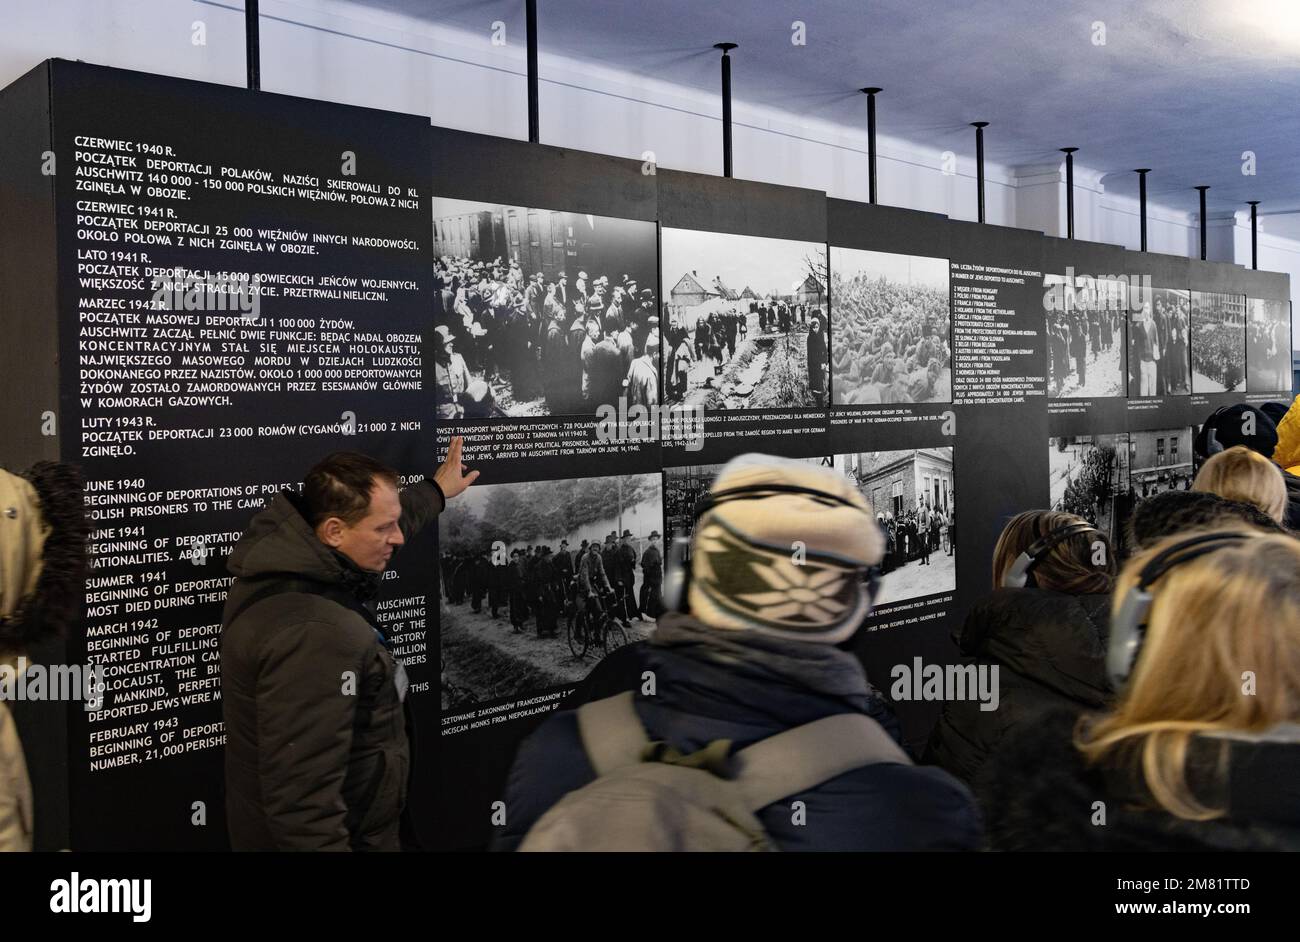 Innenbereich des Konzentrationslagers Auschwitz Birkenau; Reiseleiter erläutert den Besuchern im Museum, Auschwitz, Polen Europa Fotos von Gefangenen Stockfoto